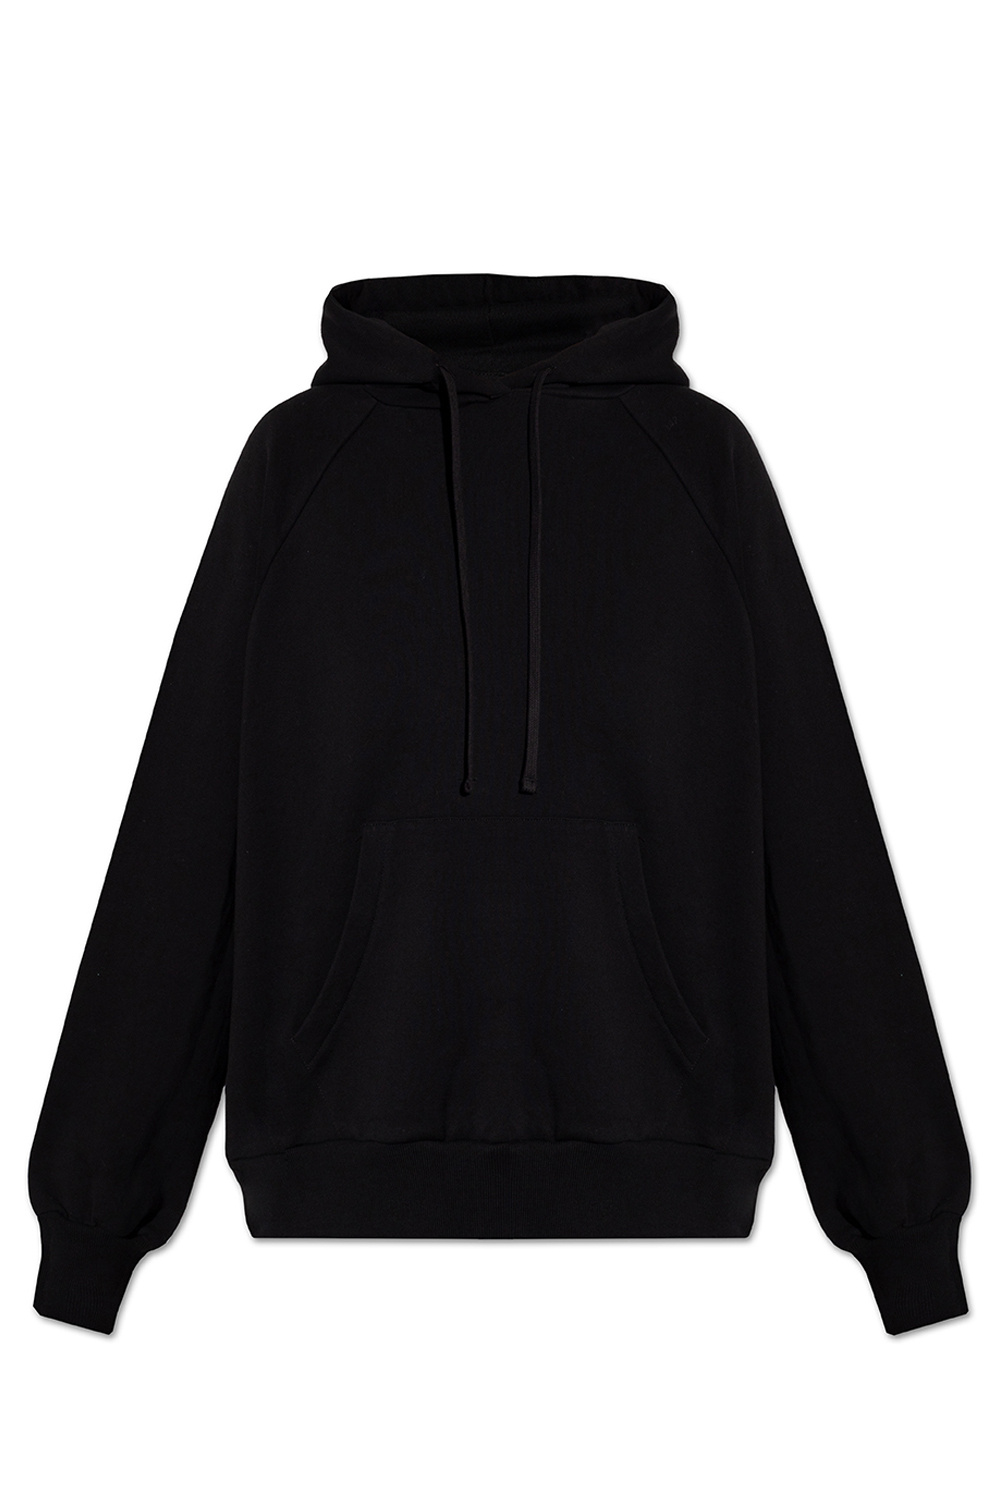 AllSaints ‘Talon’ hoodie